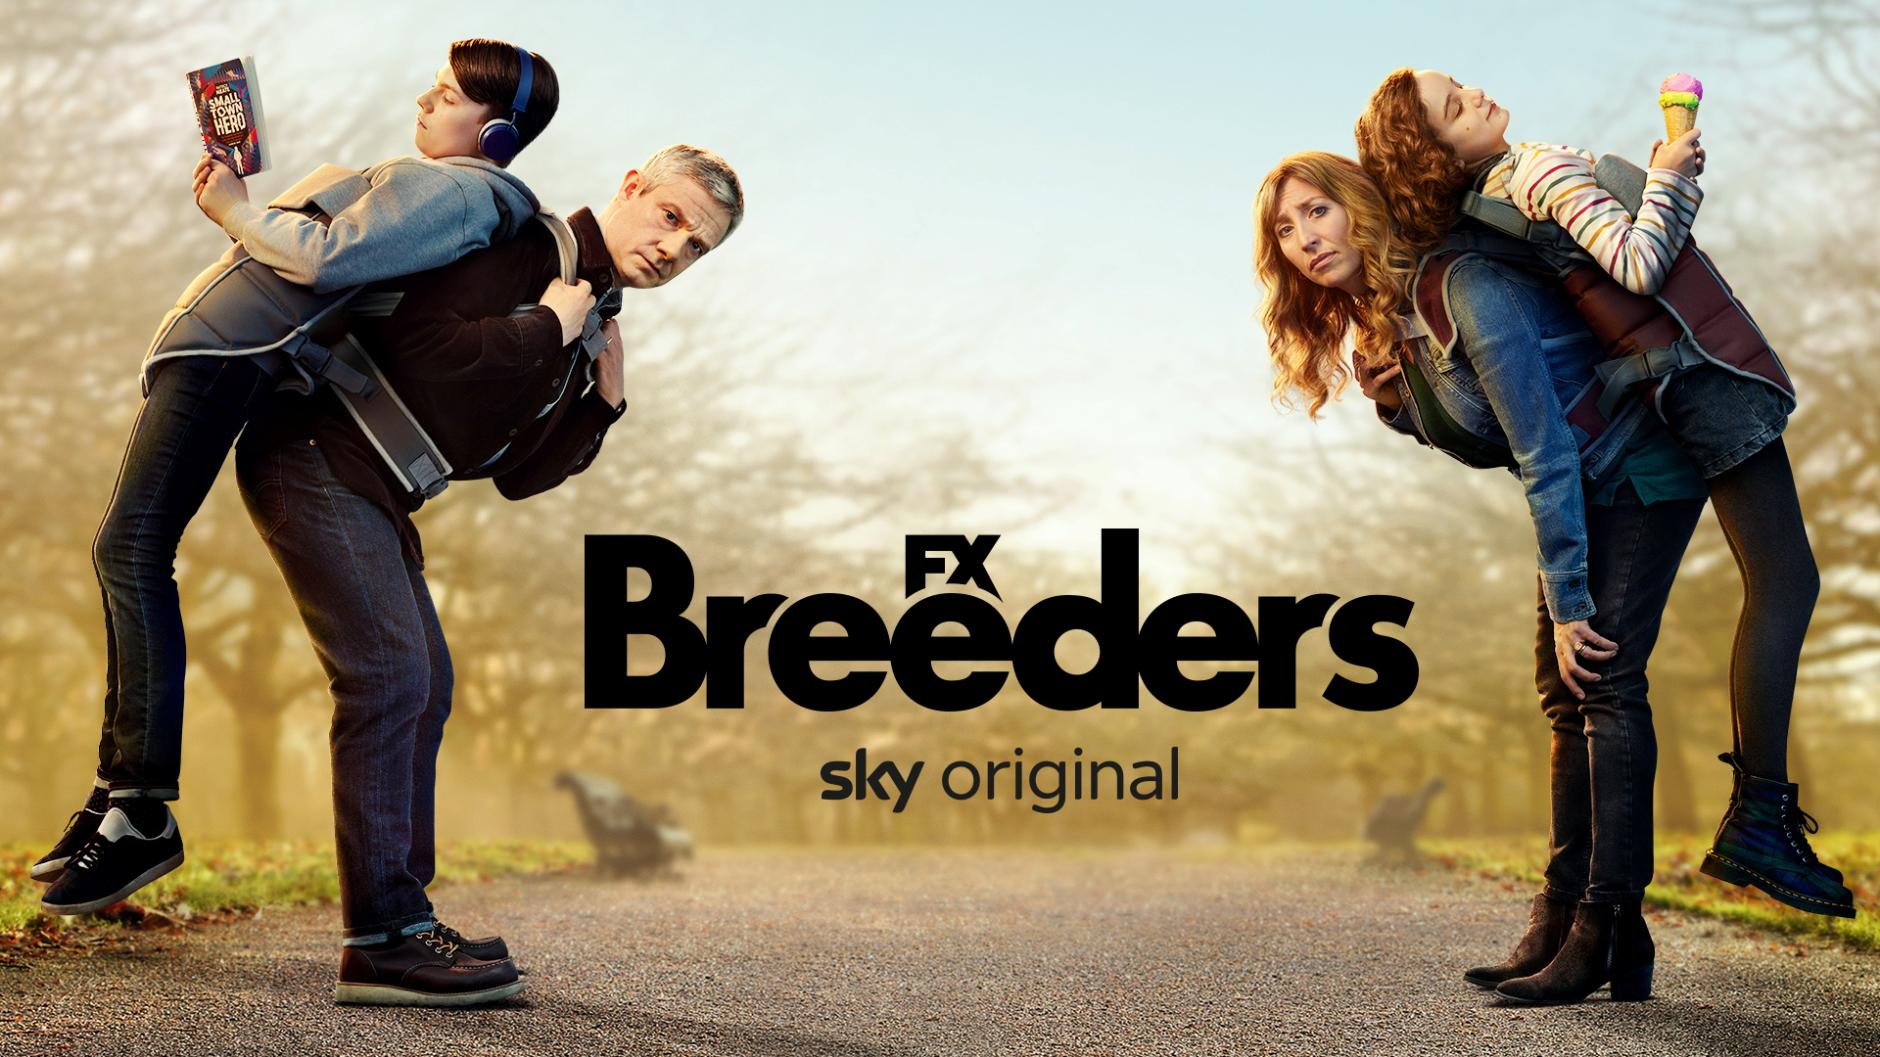 Breeders Staffel 3: Start auf Sky, Folgen, Schauspieler im Cast